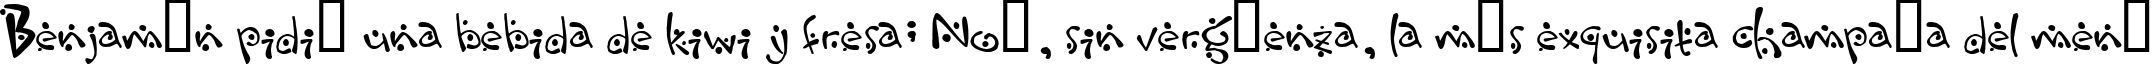 Пример написания шрифтом Zitcream текста на испанском